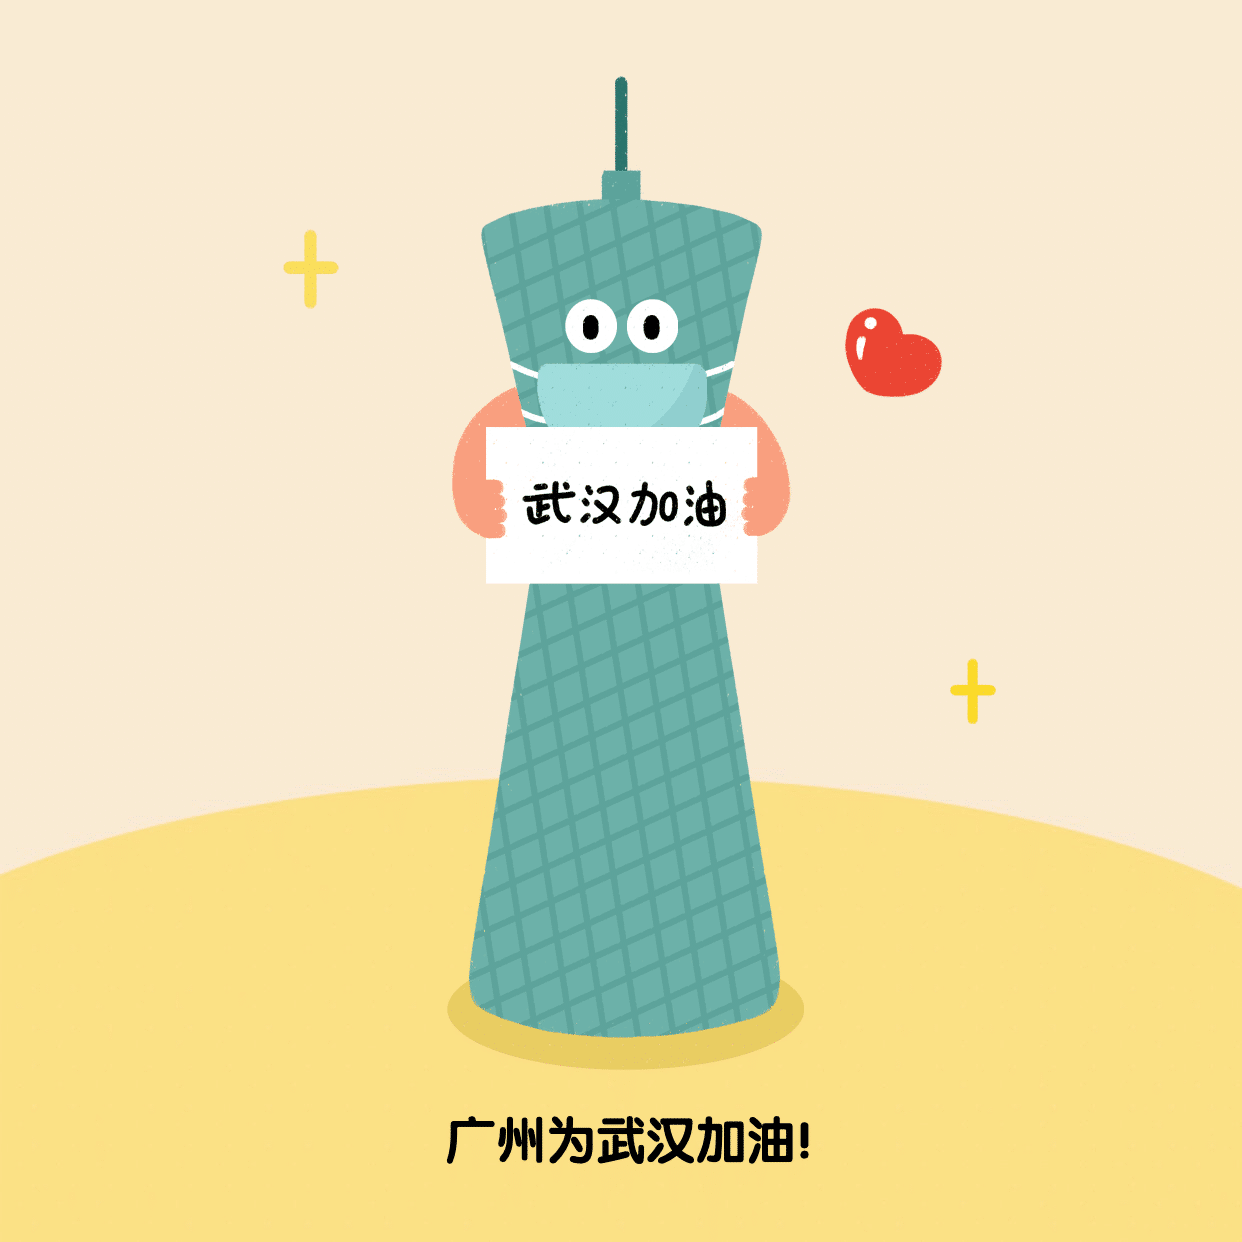 广州为武汉加油肺炎疫情方形海报